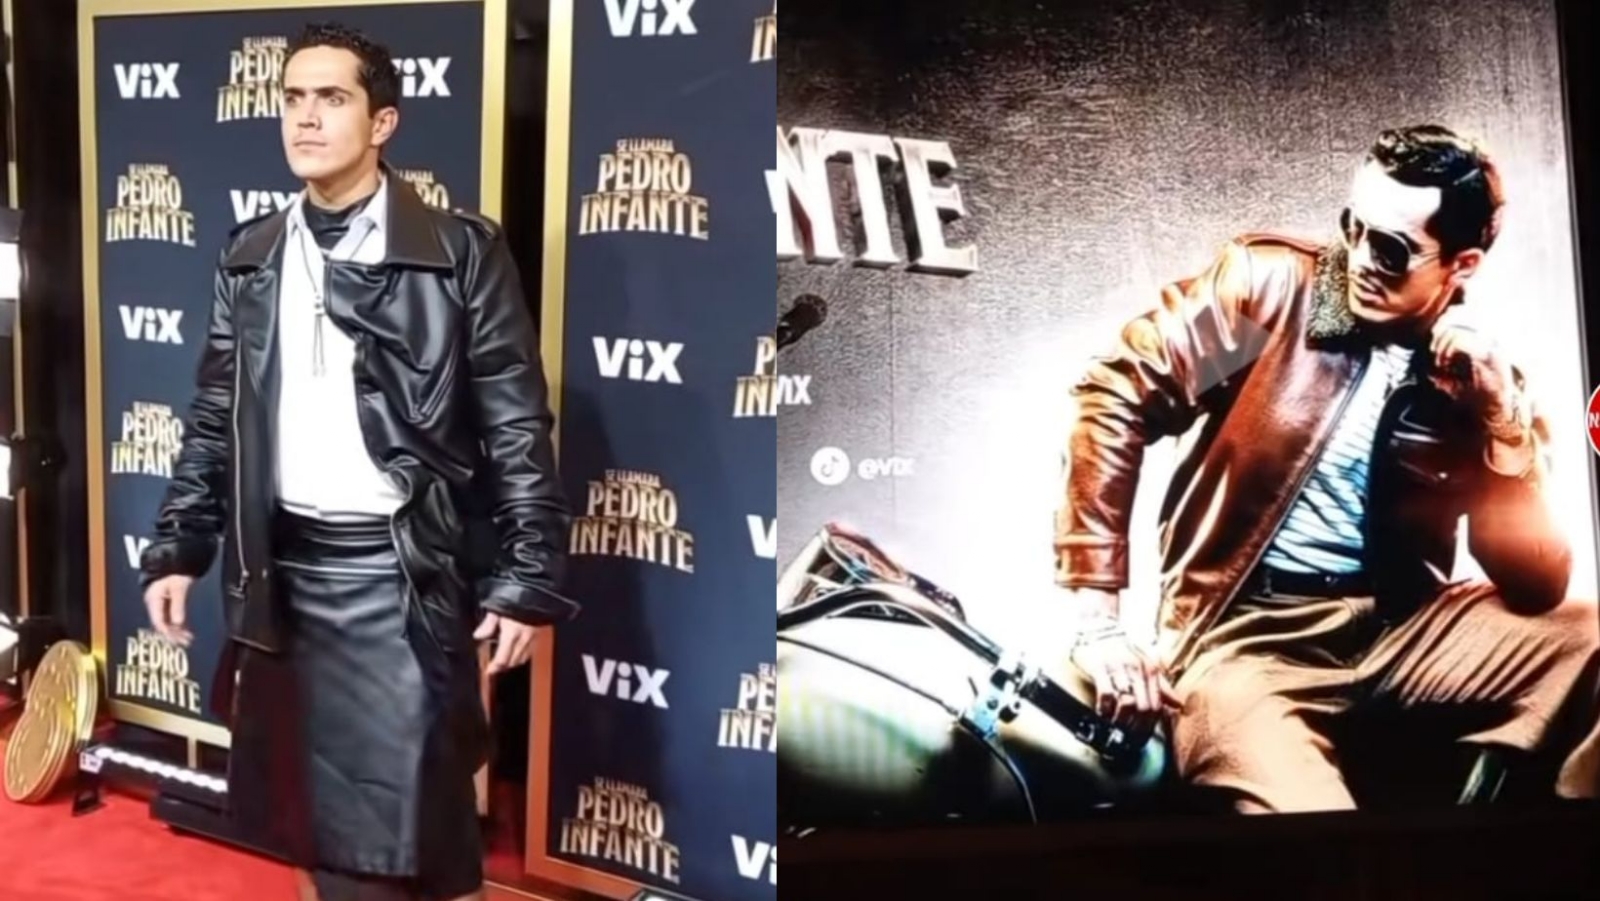 Actor que interpreta a Pedro Infante en nueva serie aparece en alfombra roja con falda: VIDEO